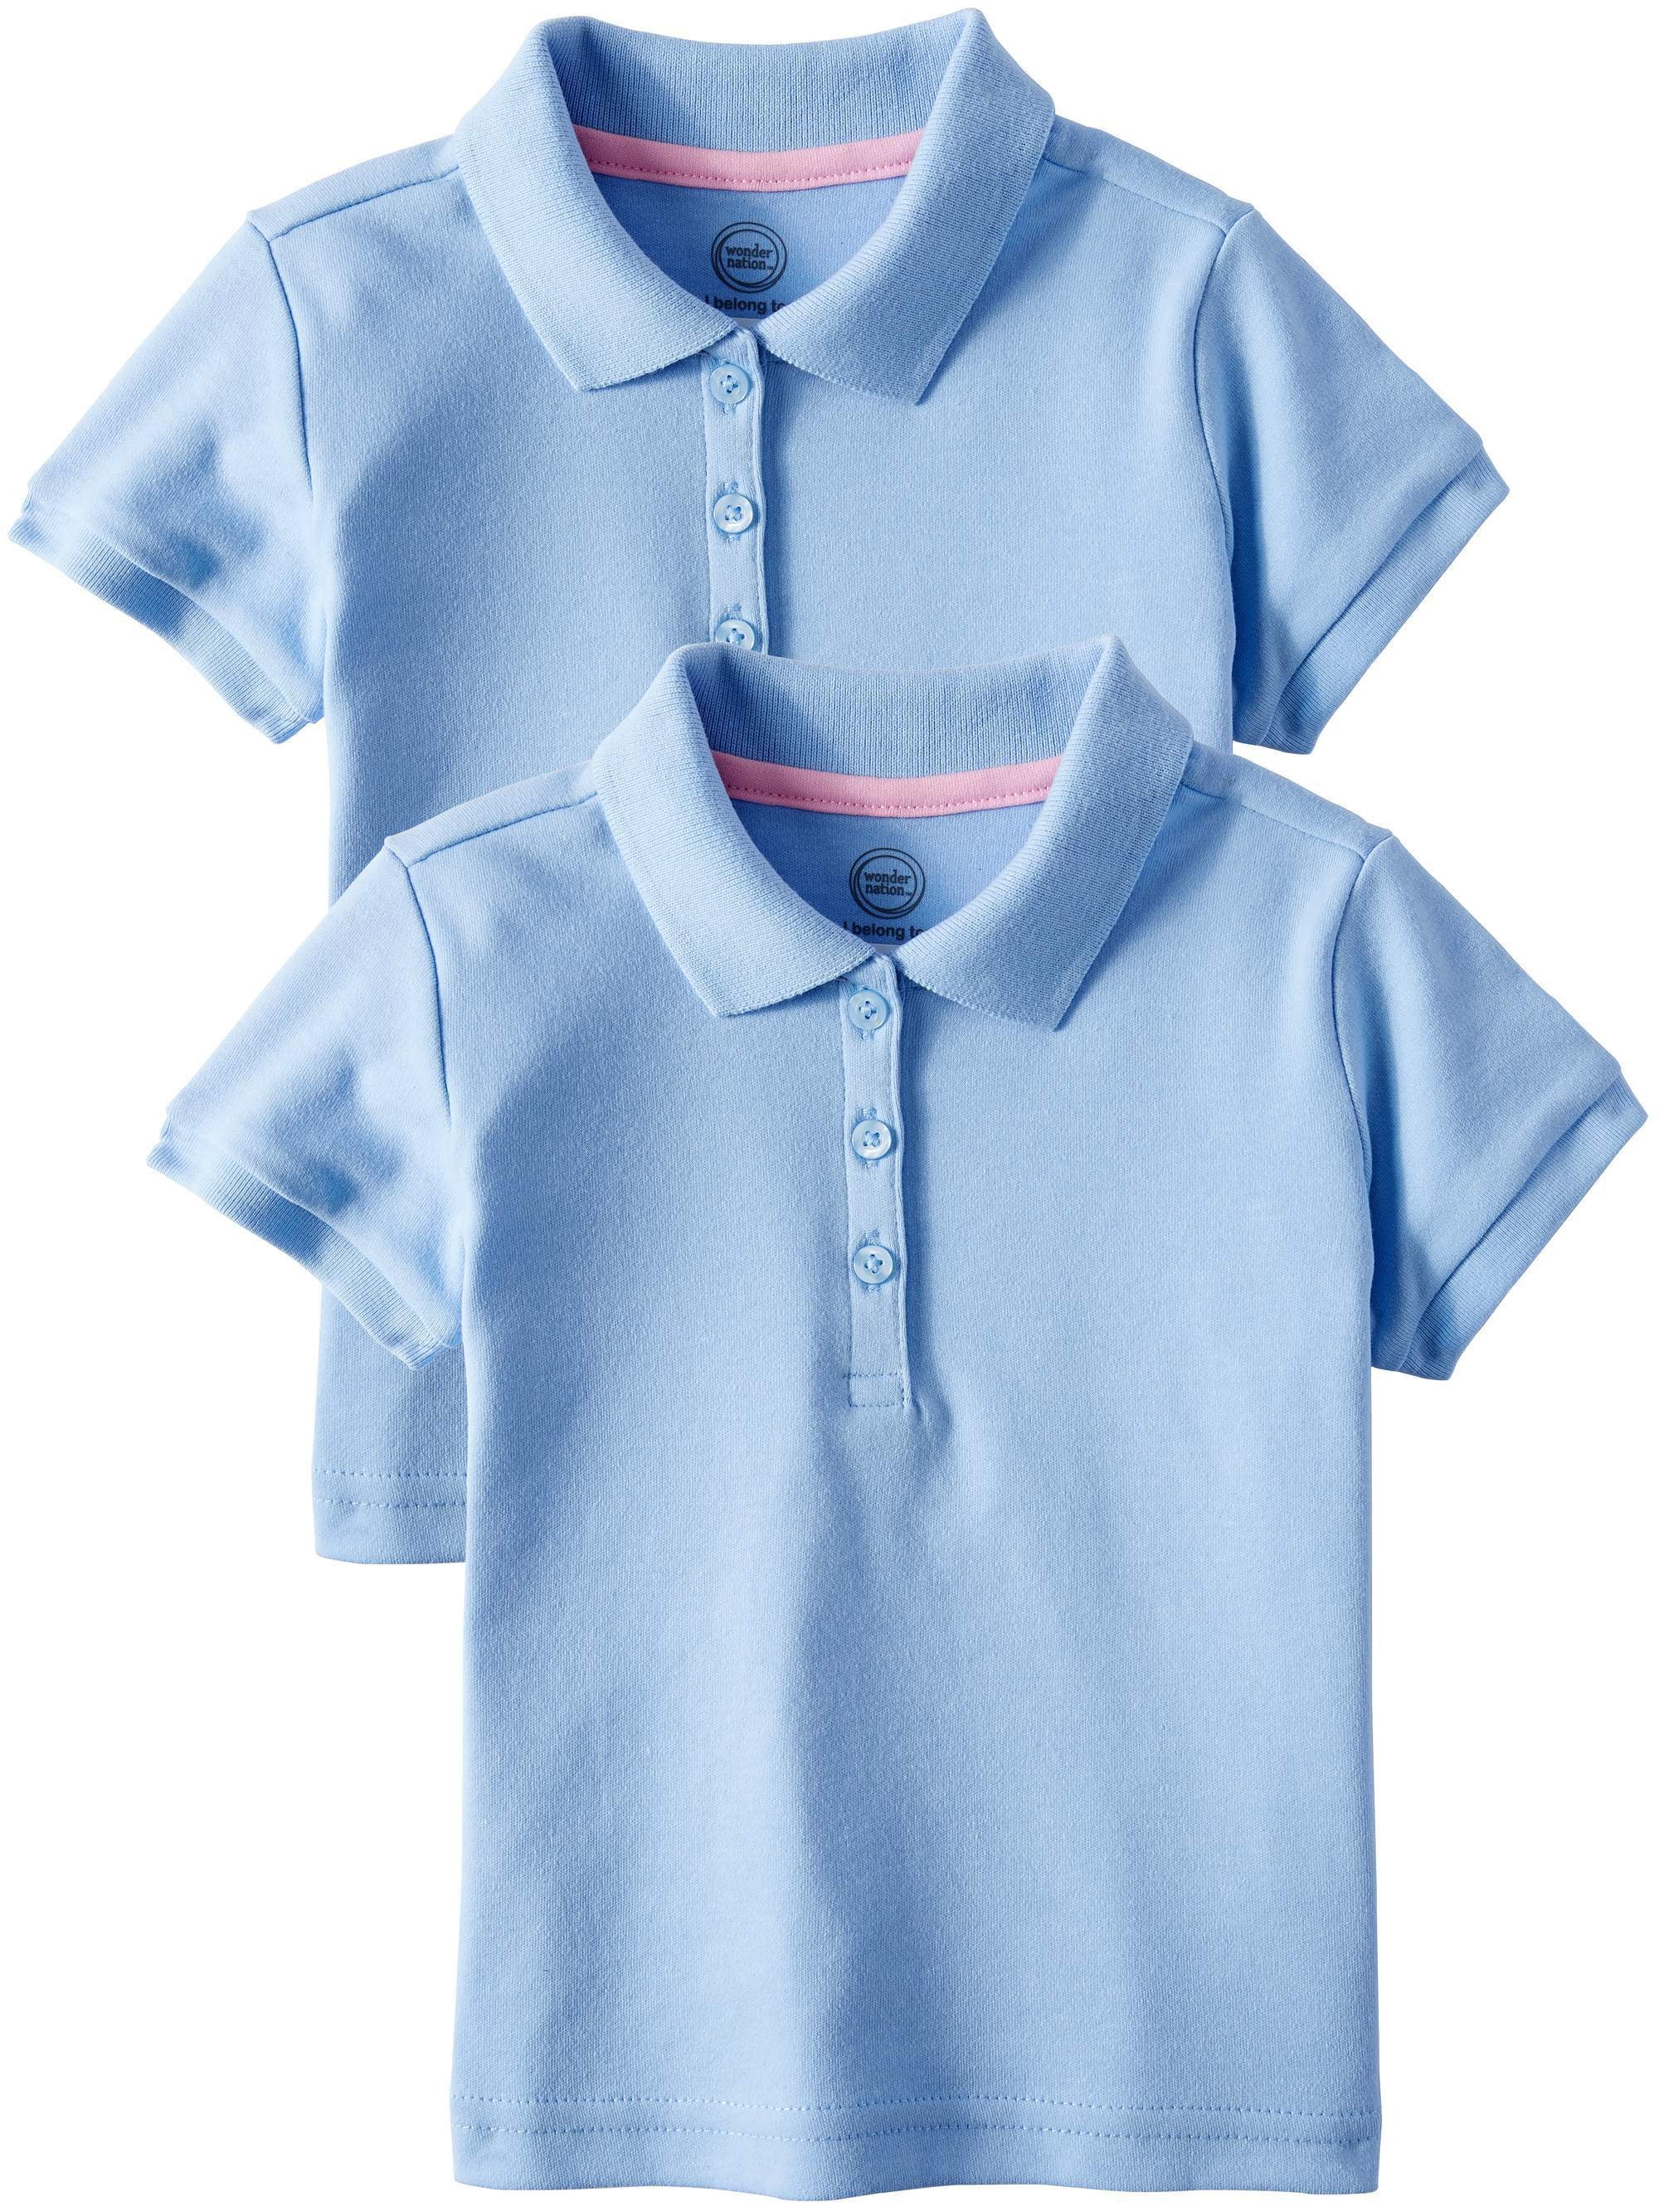 U.S Polo Assn Performance Short Sleeve Polo T-Shirt Girls School Uniform Shirt 2 Pack